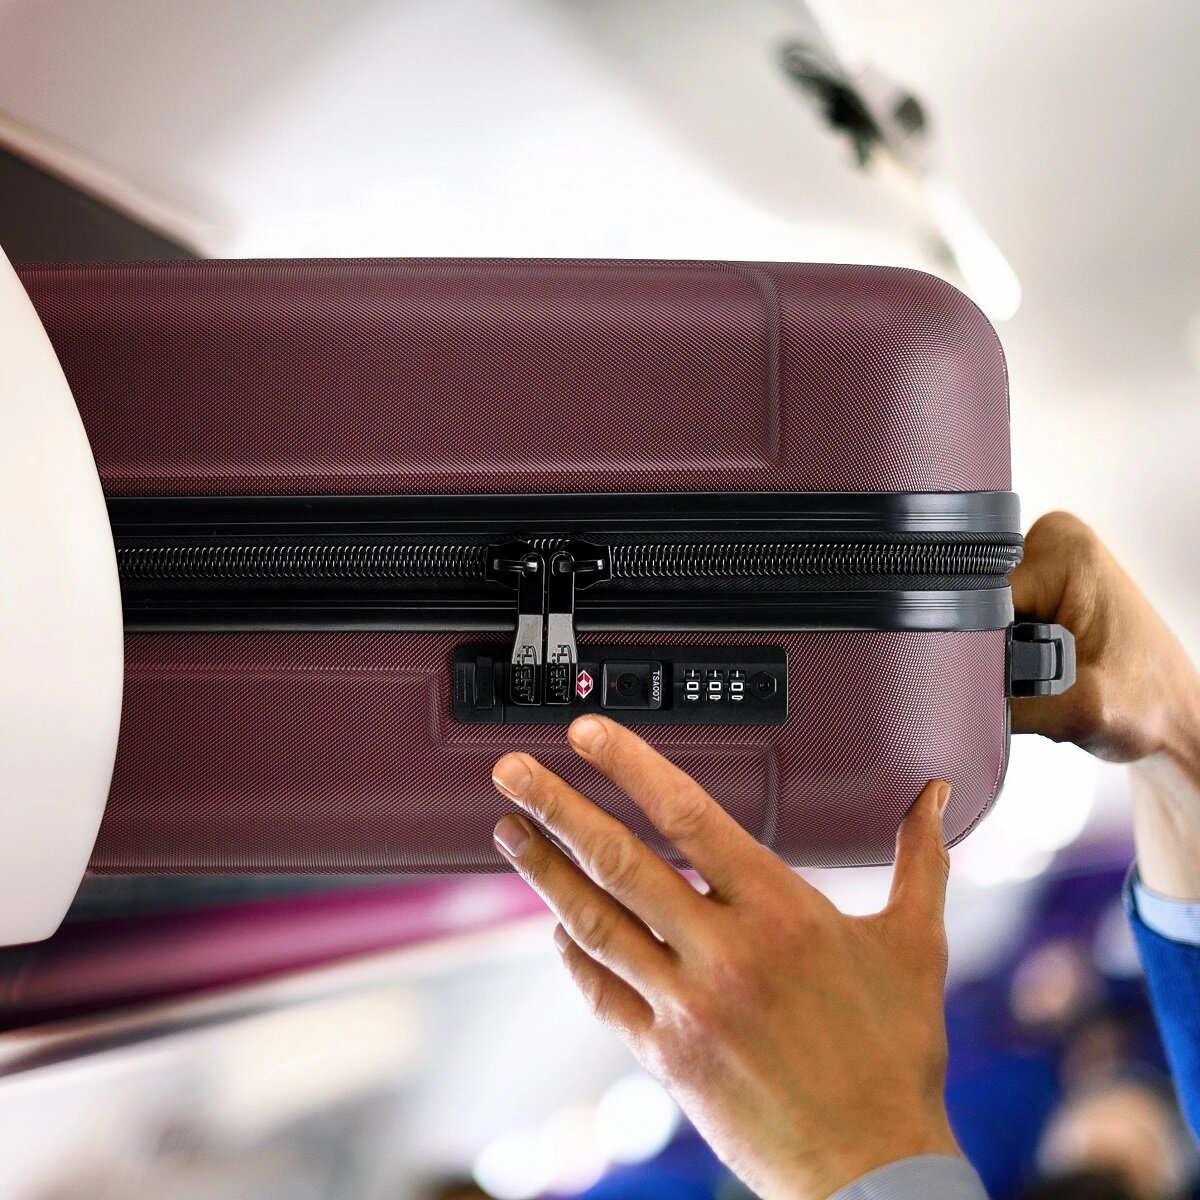 Walizka Anpa średnia wkładanie  walizki w kabinie samolotu w miejsce na bagaże nad fotelem